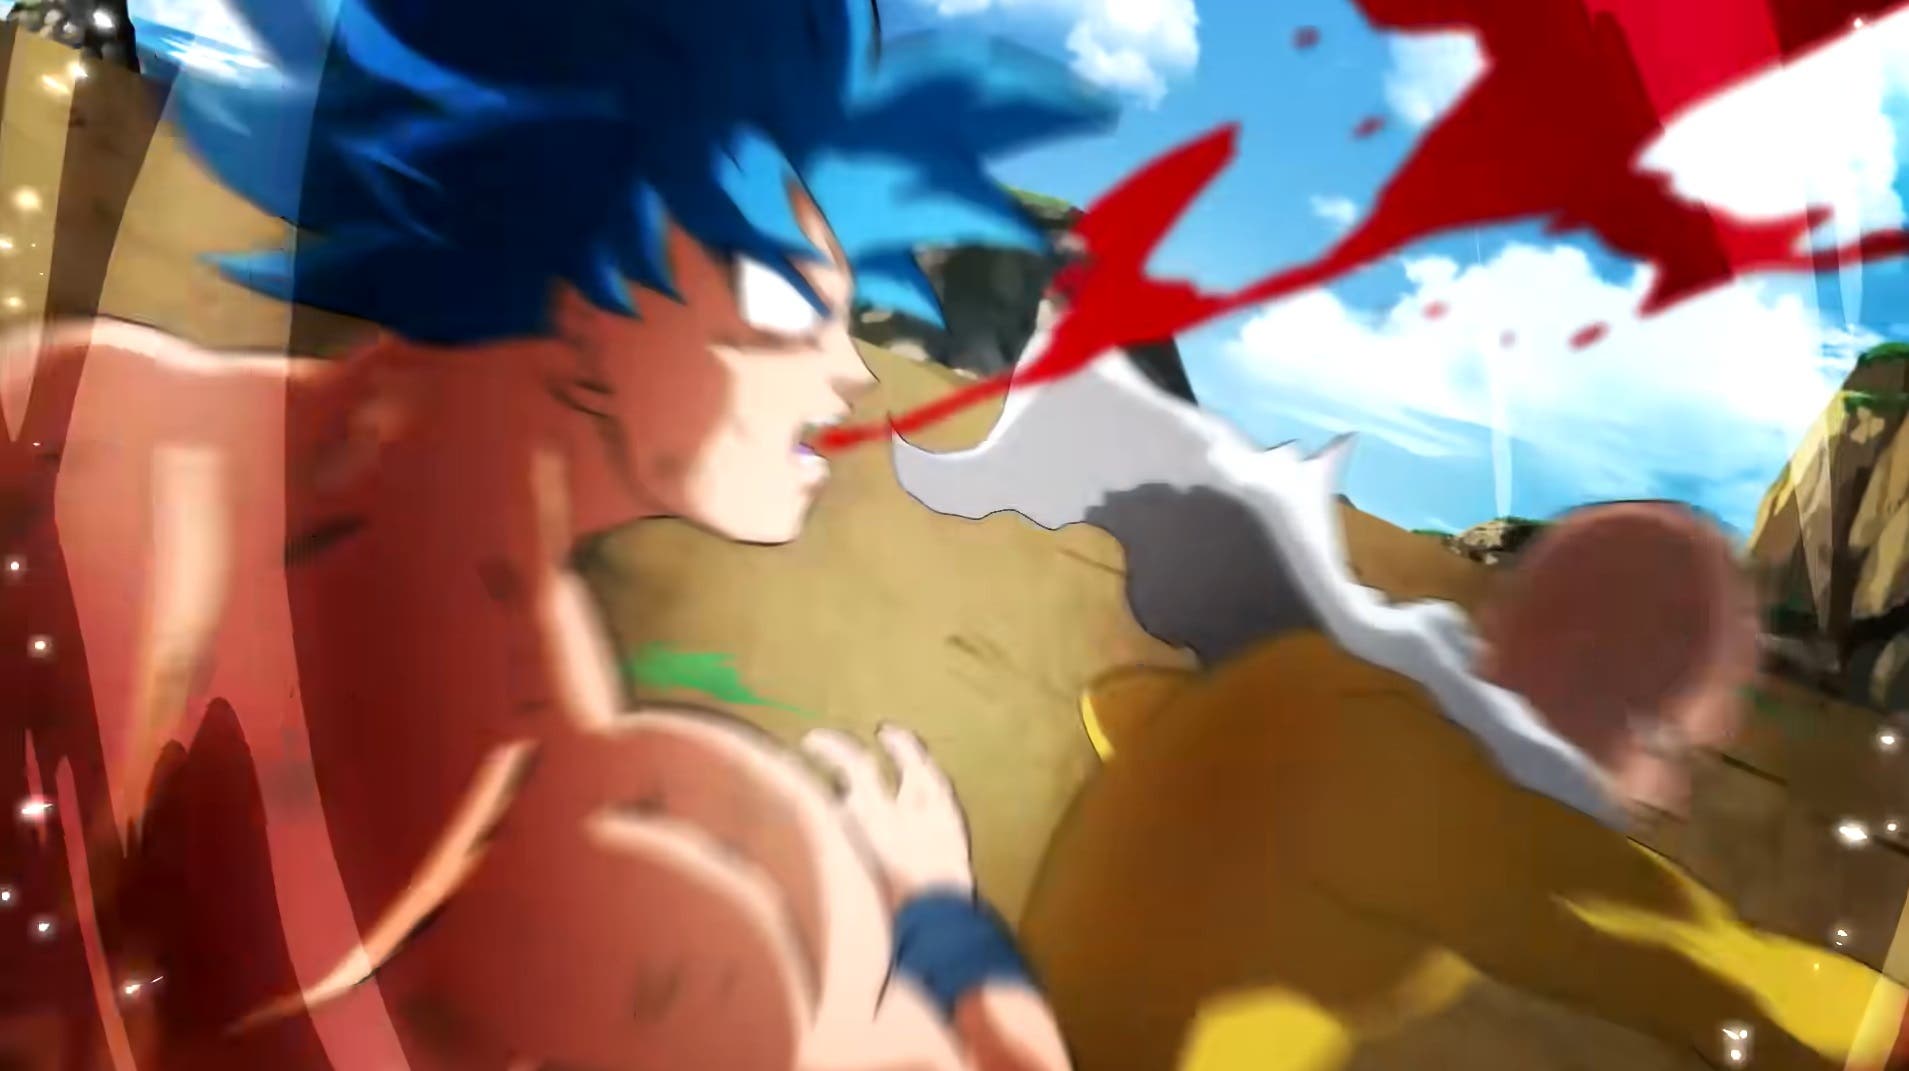 Te flipó la parte 1 del Saitama vs Goku? Pues ya puedes alucinar con la  parte 2 de este brutal combate